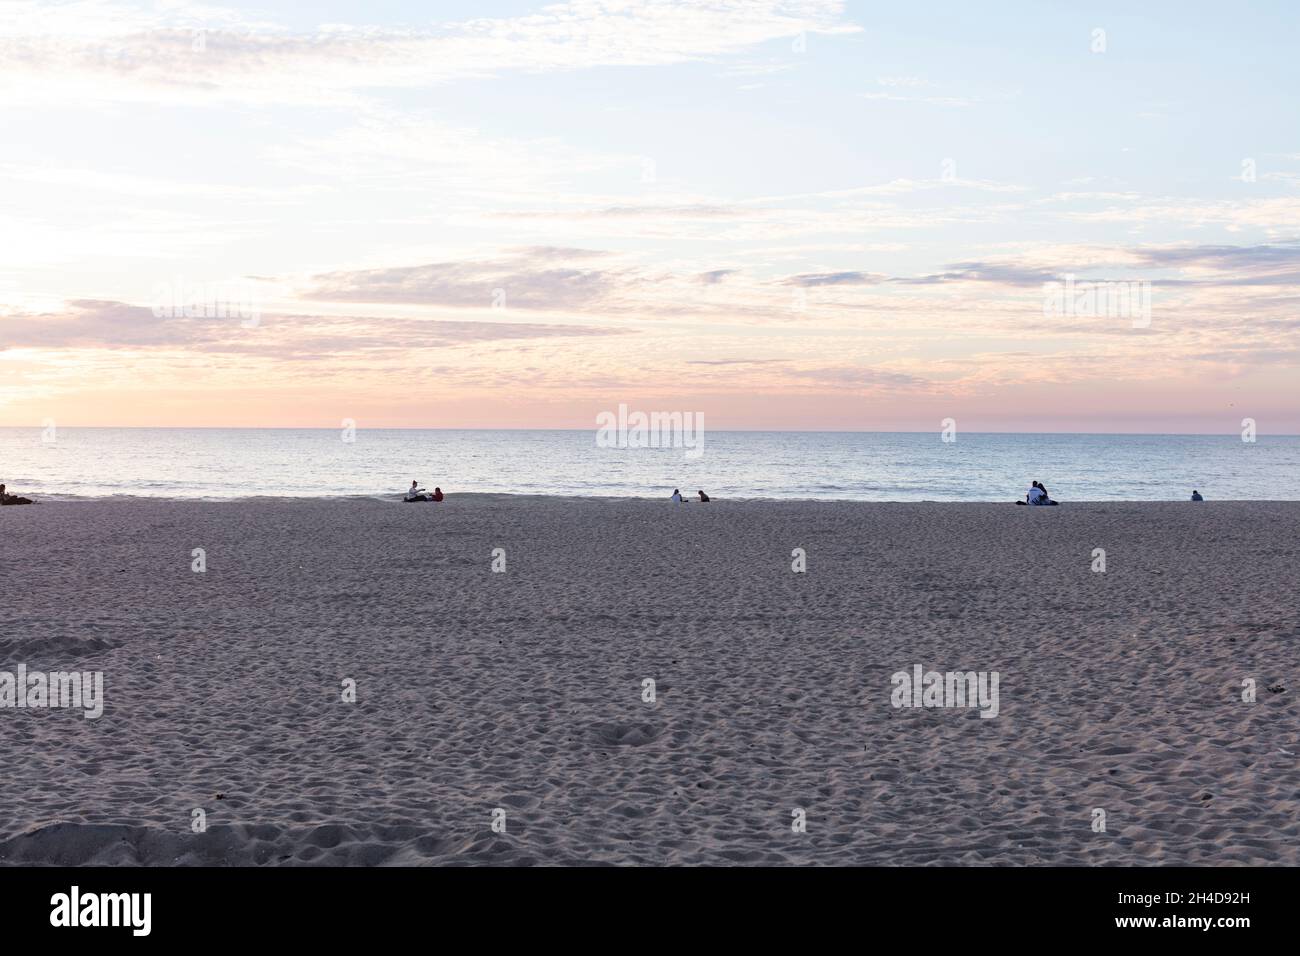 Sonnenuntergang am Strand von Espinho. Paare sitzen am Strand, nicht zu erkennen und schauen sich den Sonnenuntergang an Stock Photo